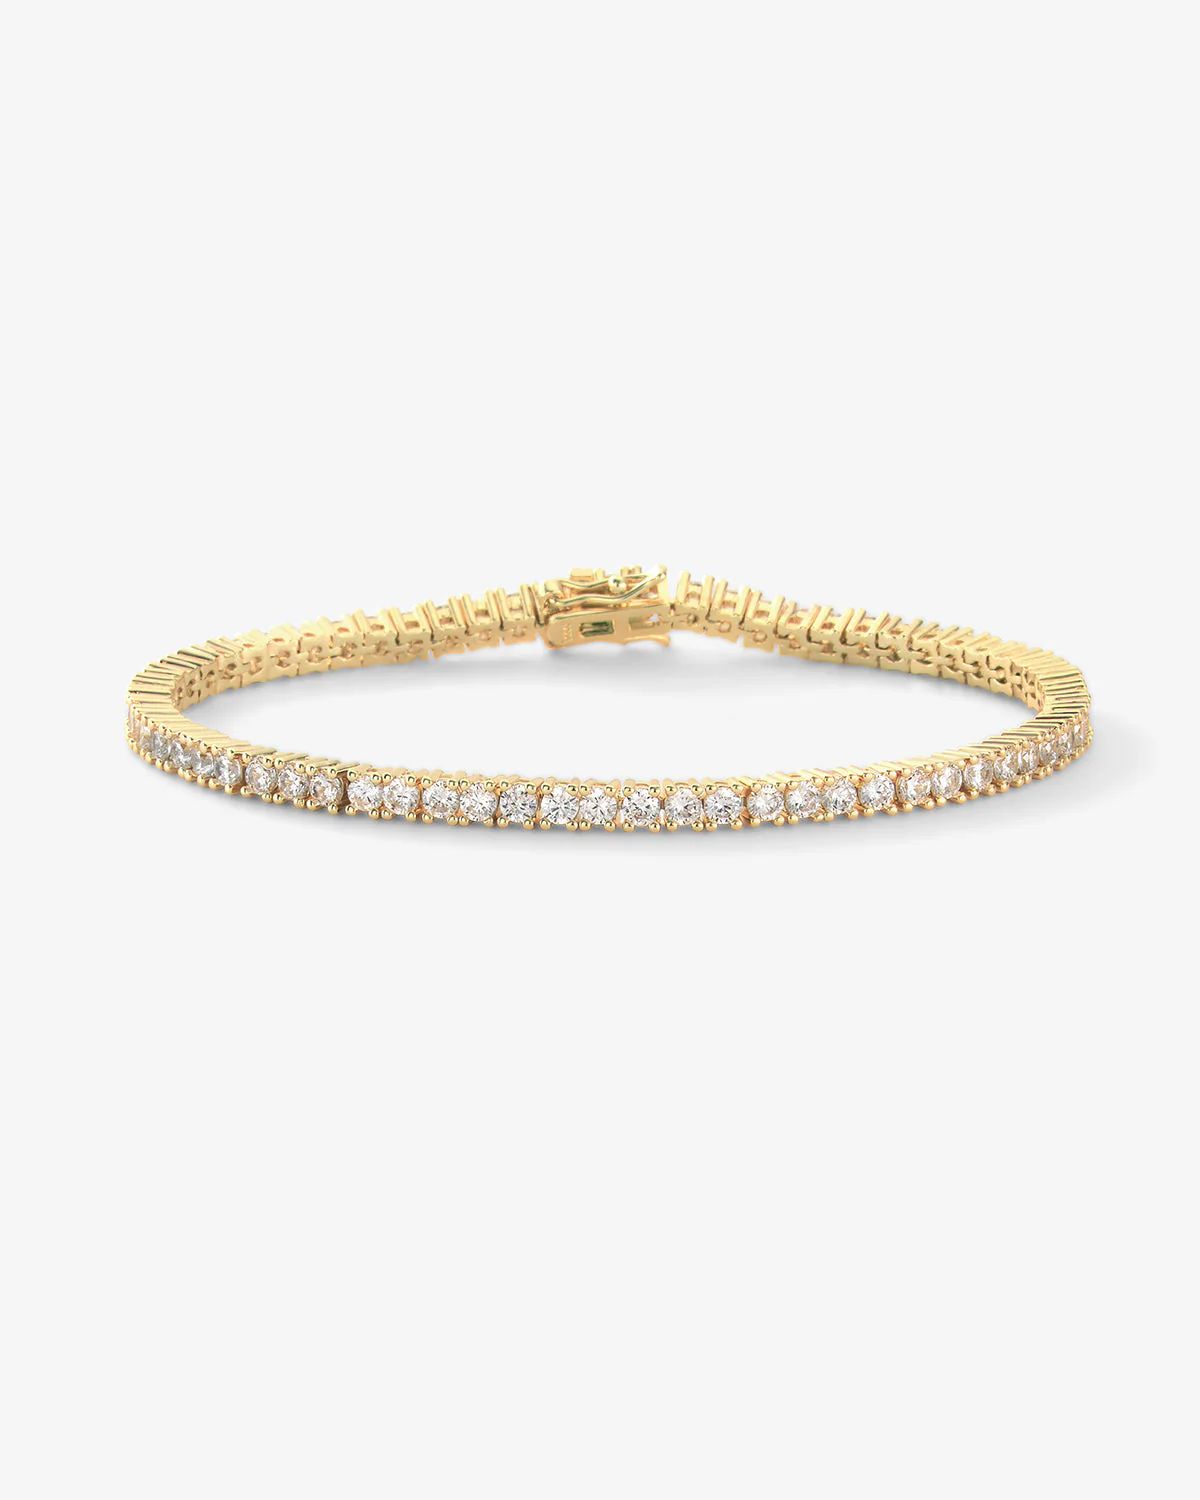 Heiress Tennis Bracelet - Gold|White Diamondettes | Melinda Maria